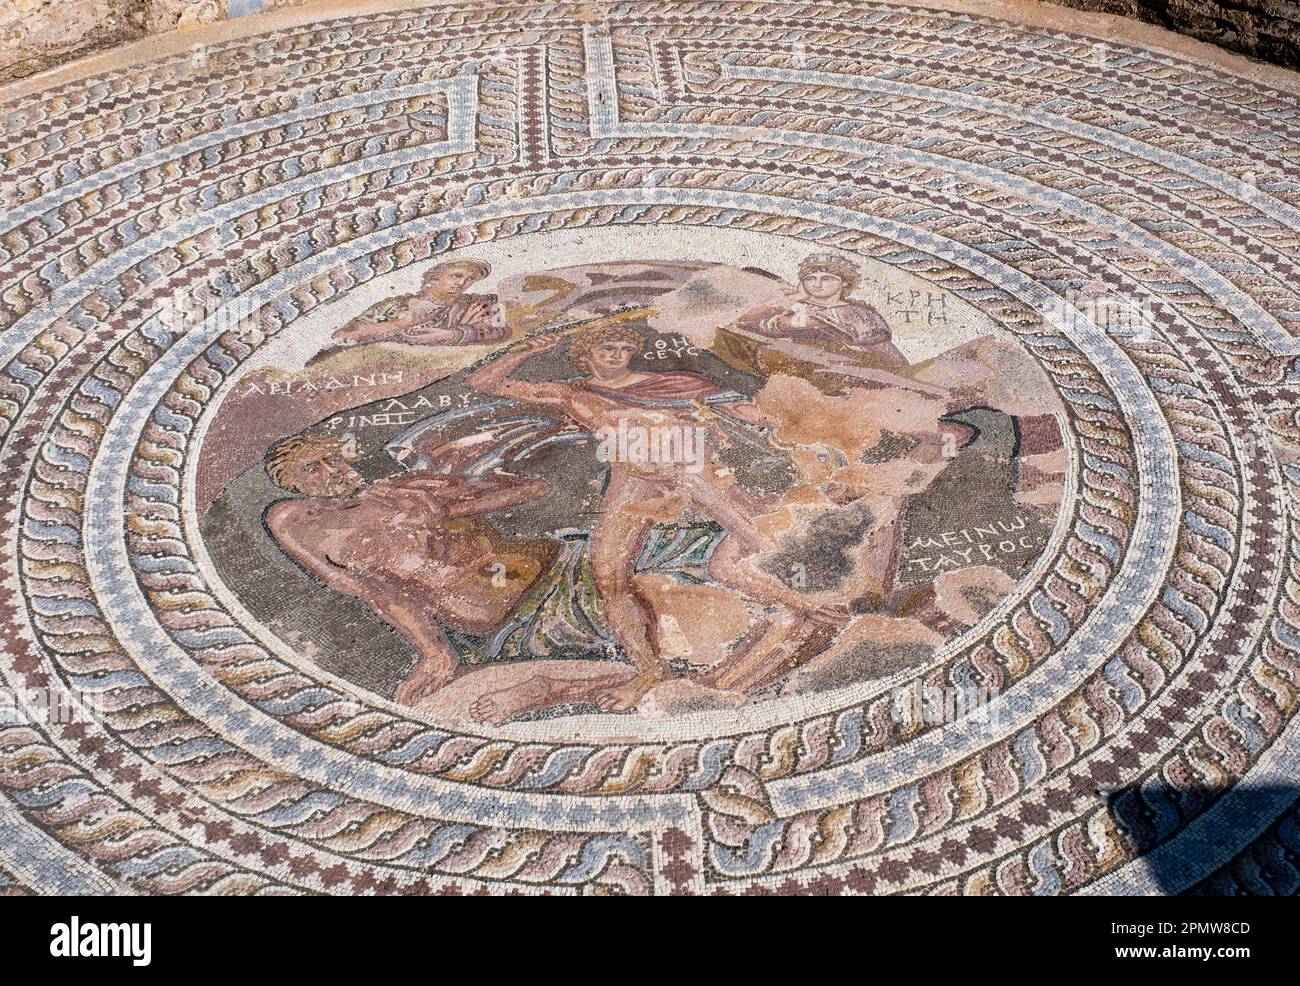 La Maison d'Aion, Paphos, Chypre : sol en mosaïque représenté dans un médaillon, duel mythique entre Theseus et le Minotaure dans le labyrinthe de Crète. Banque D'Images